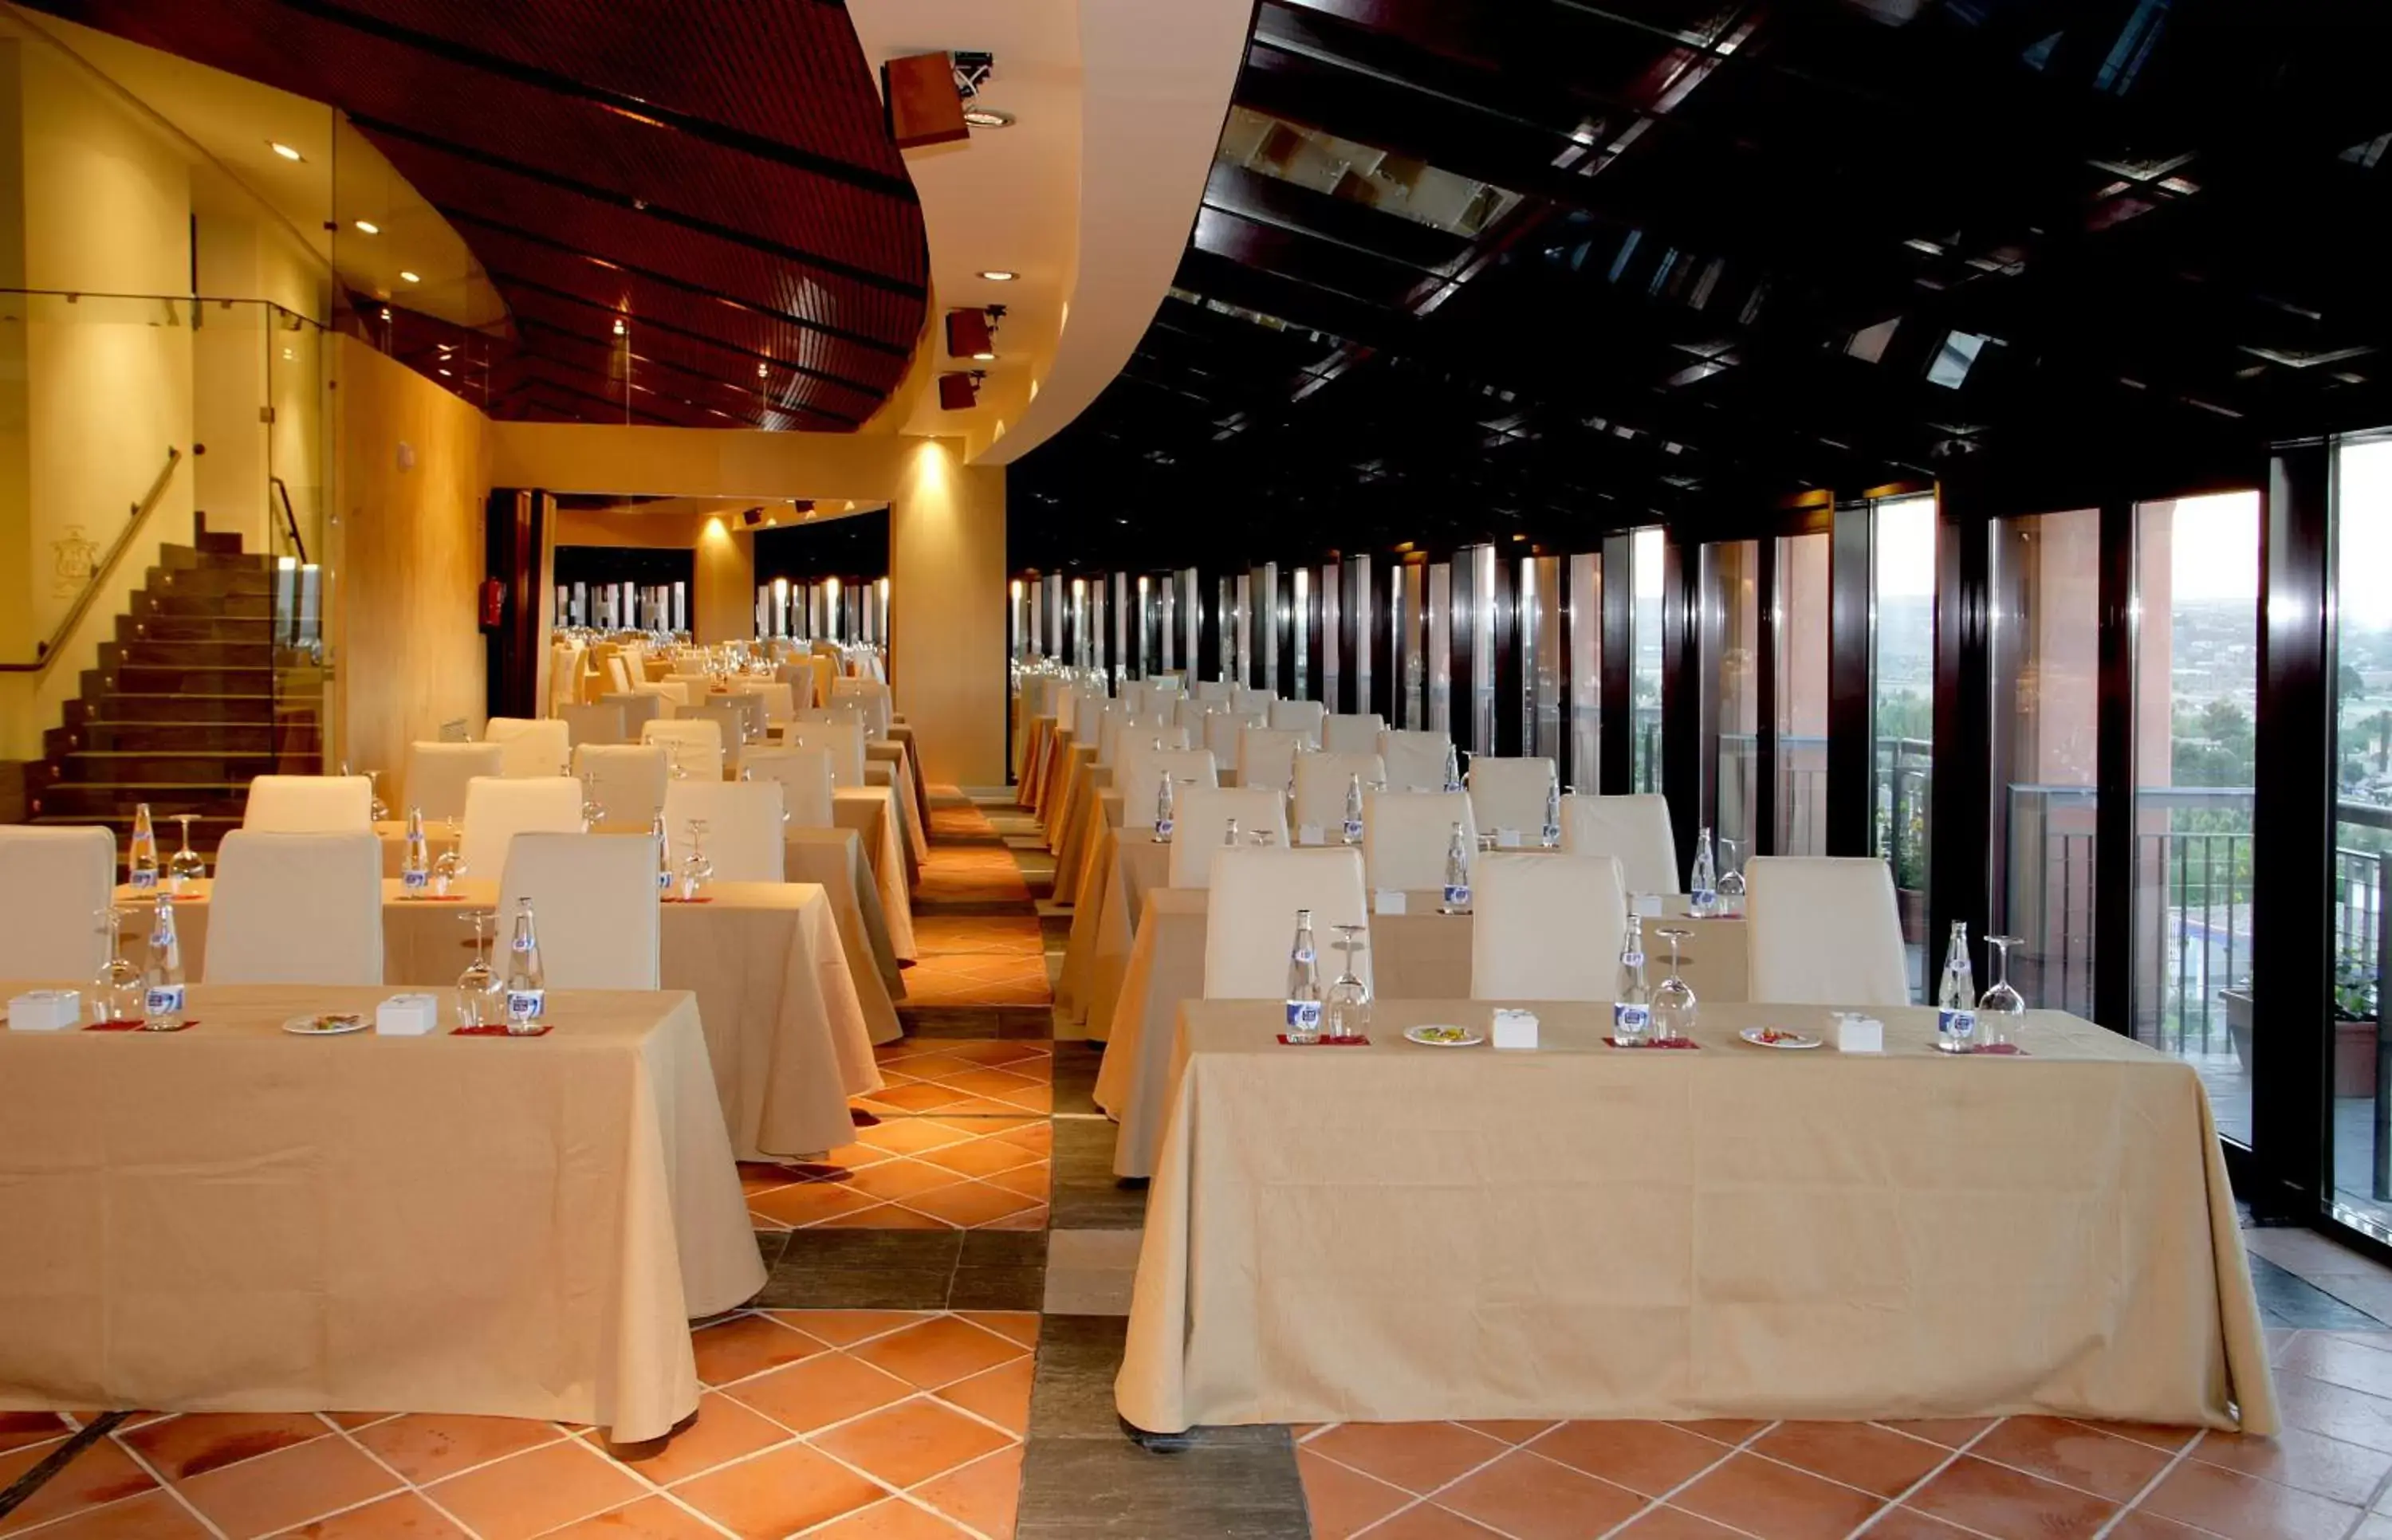 Business facilities, Banquet Facilities in Hotel Cigarral el Bosque